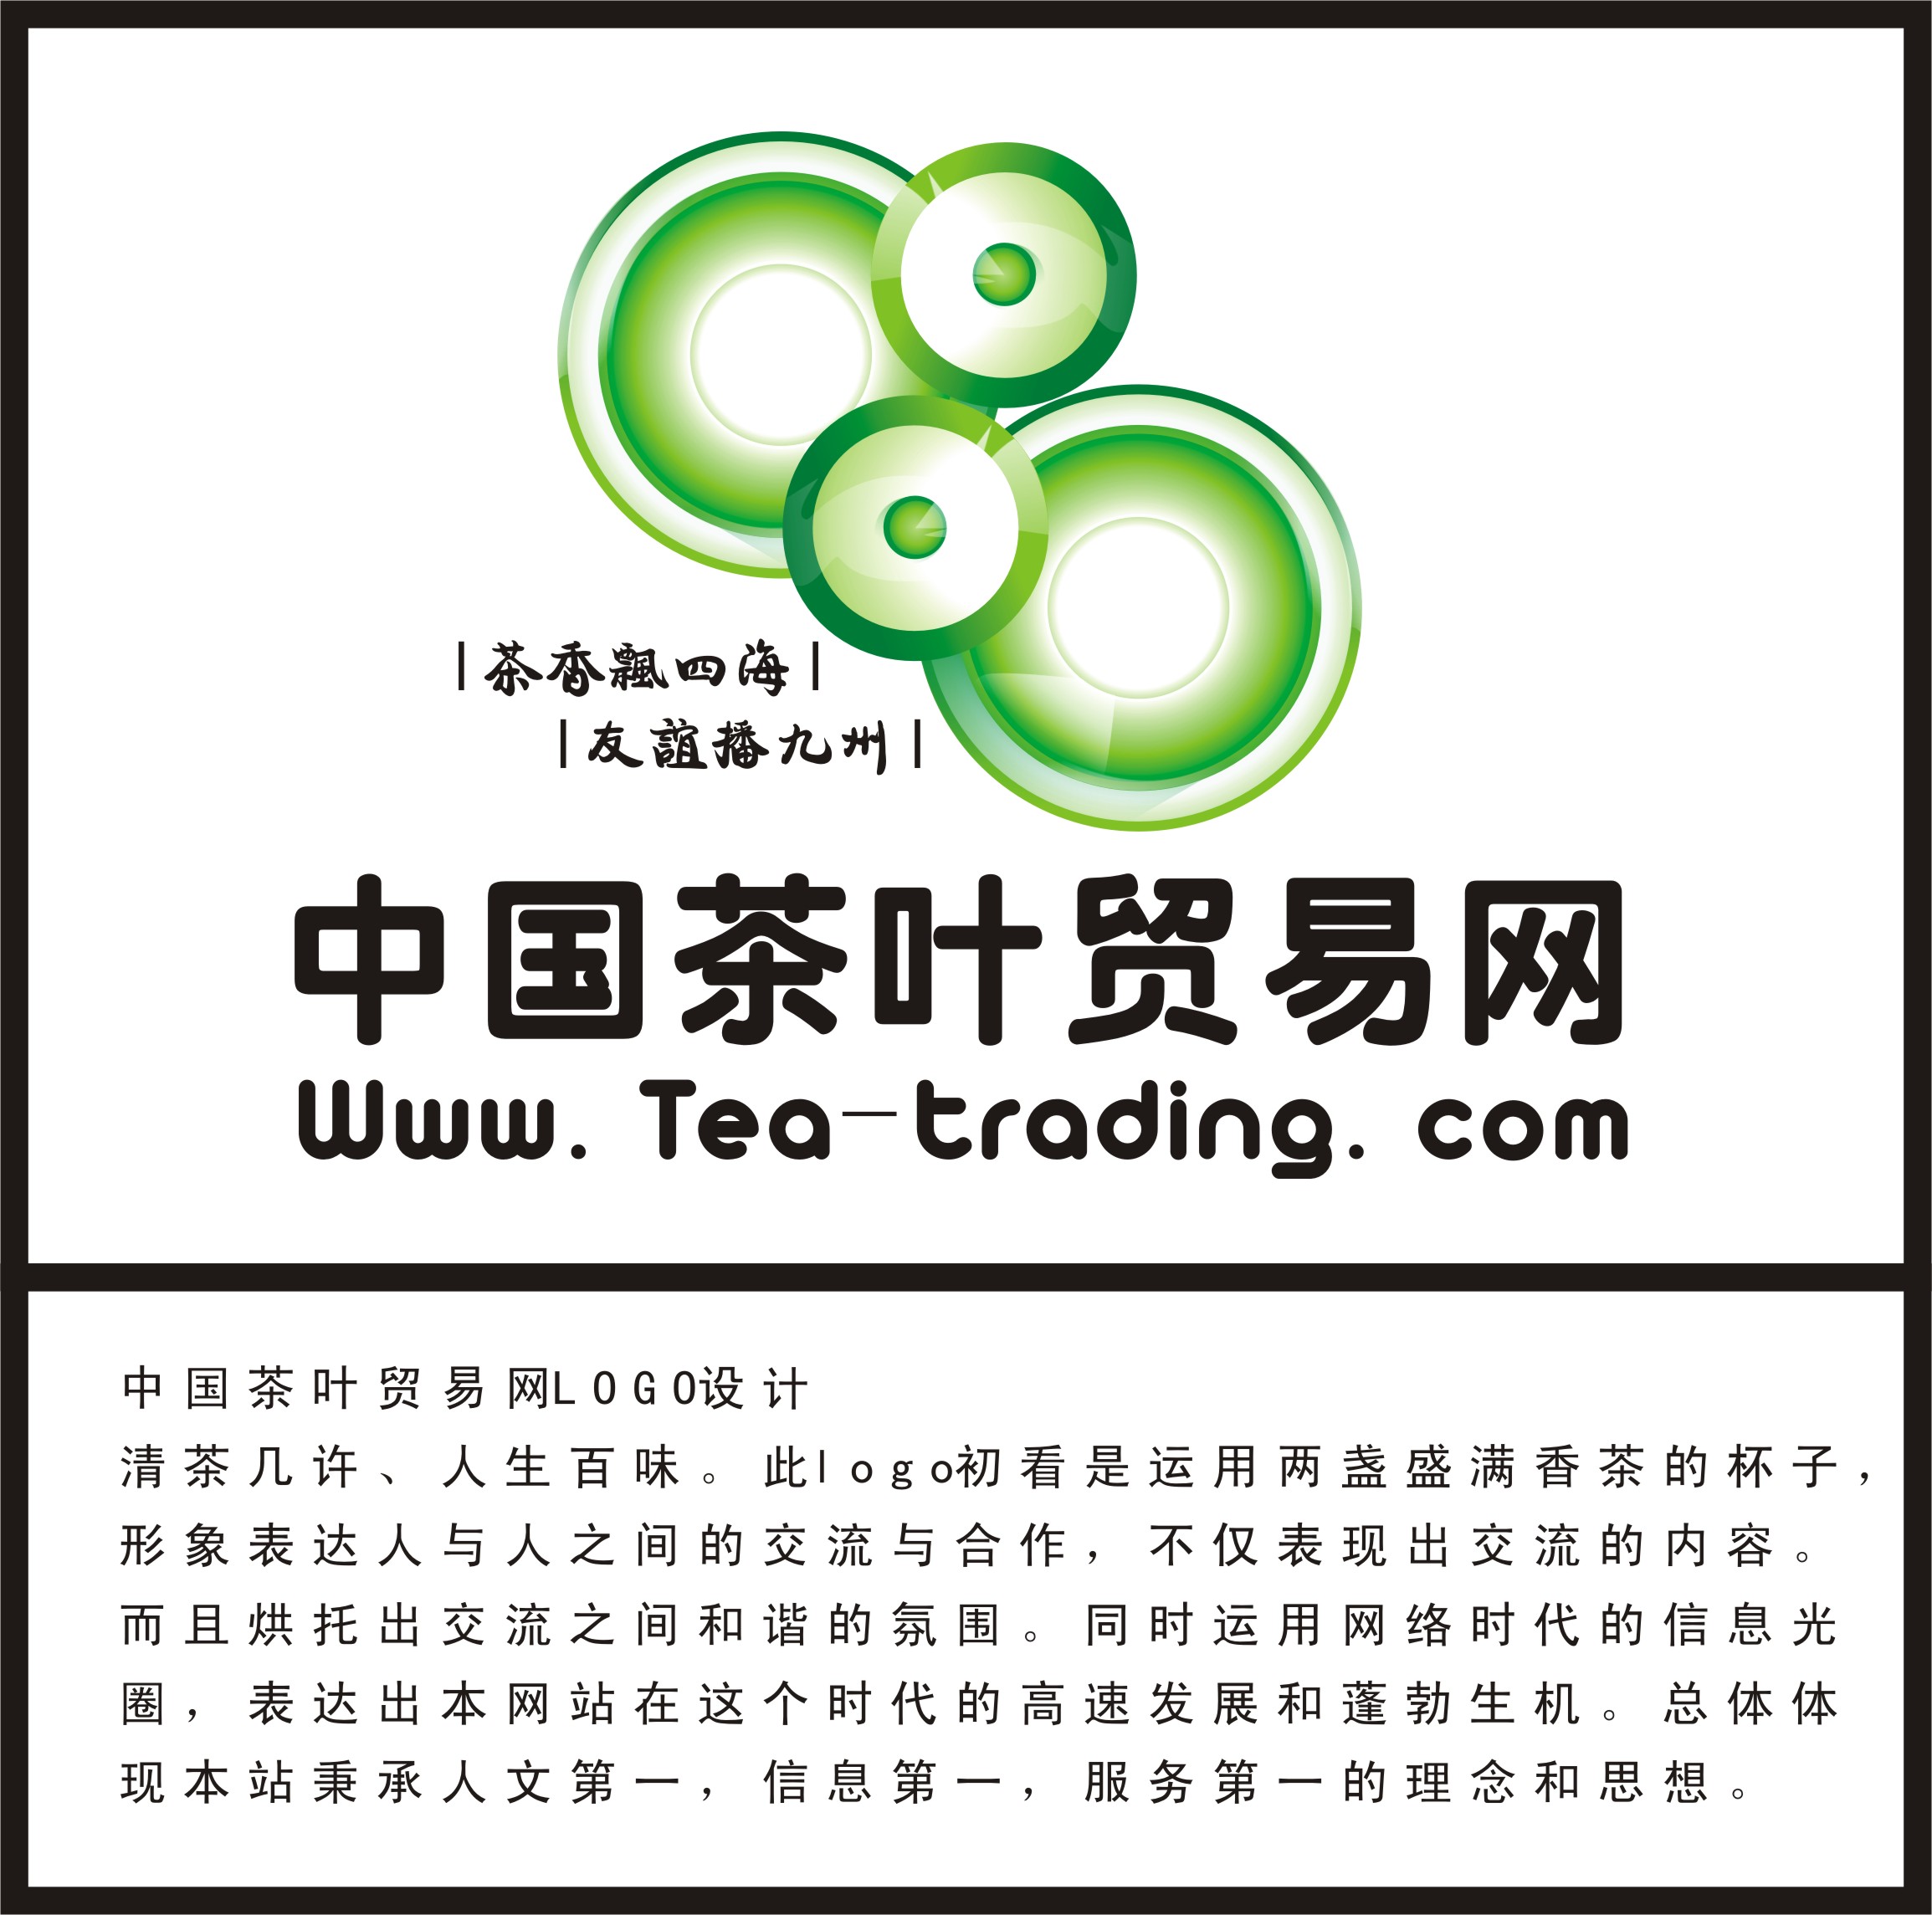 中国茶叶贸易网LOGO设计_600元_K68威客任